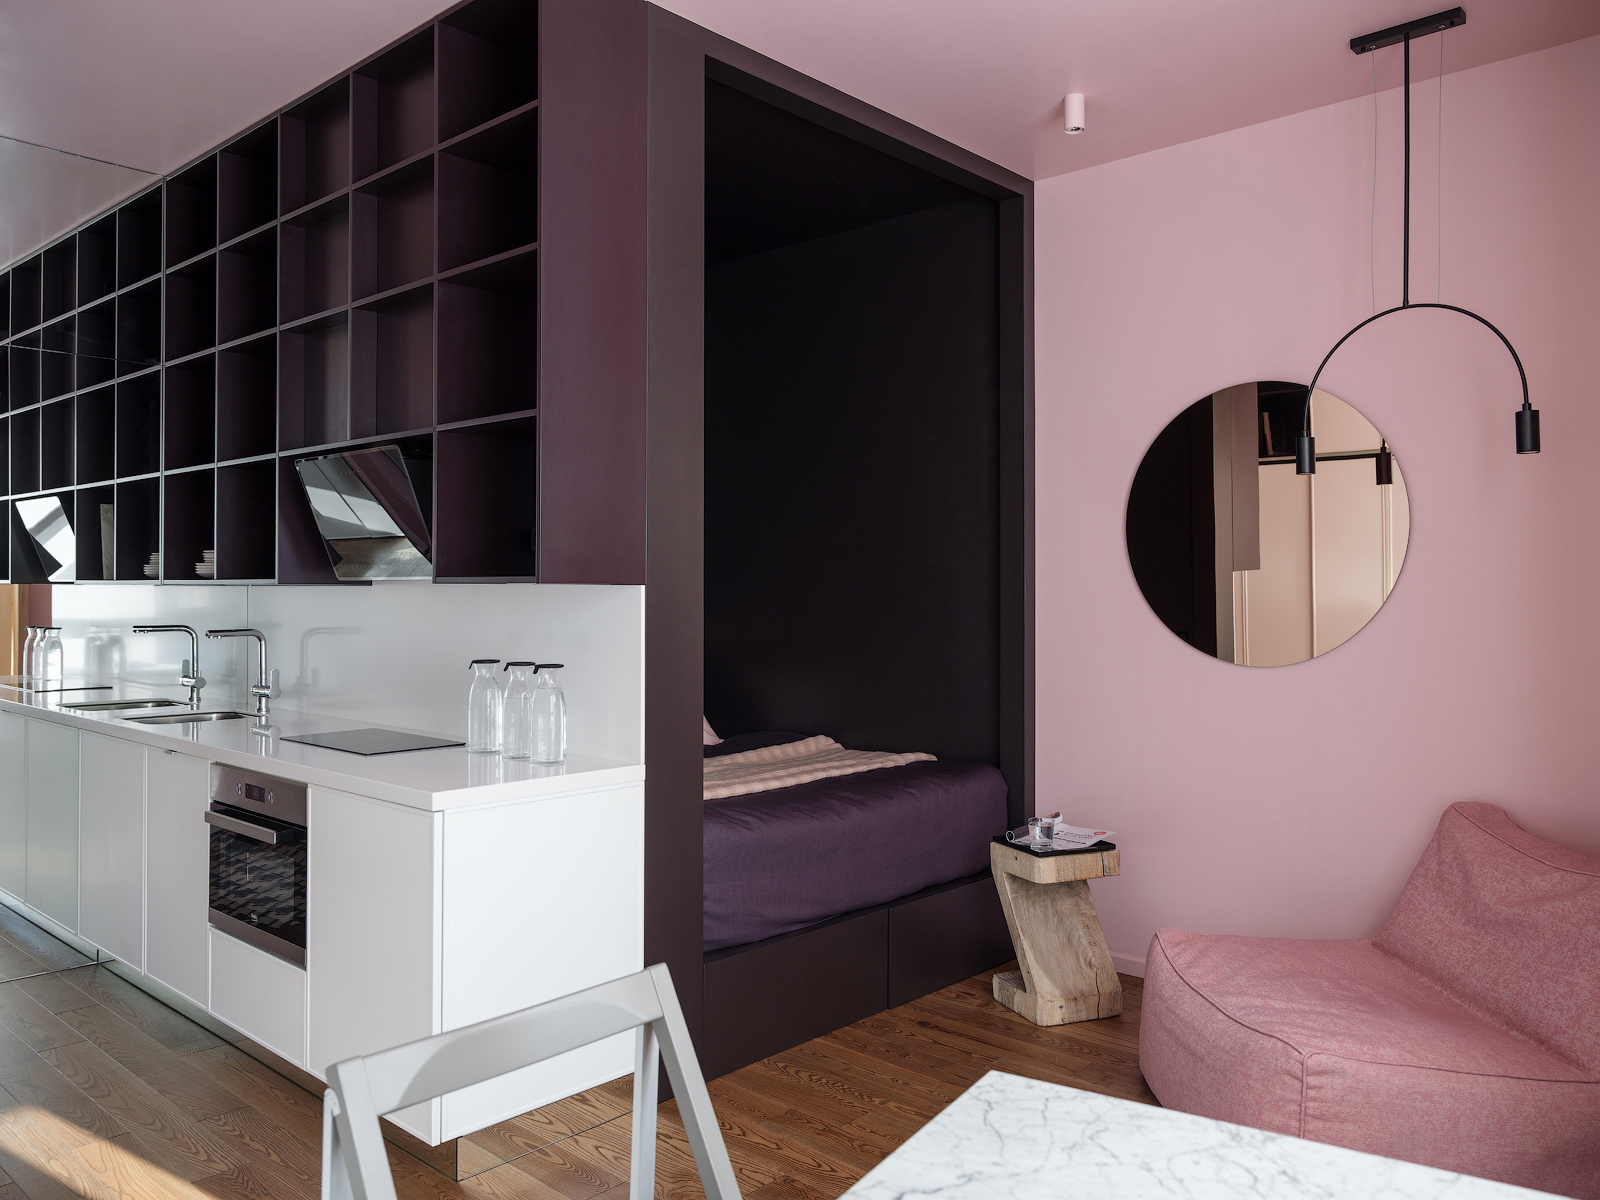 Thiết kế tuyệt đẹp bởi khả năng tối ưu hóa hốc tường sau phòng bếp cùng cách lựa chọn màu sắc. Hệ thống lưu trữ màu tím kết nối với đồng bộ phòng ngủ, sang đến bức tường bên cạnh chuyển màu hồng phấn cho cái nhìn vừa sang trọng vừa nữ tính.